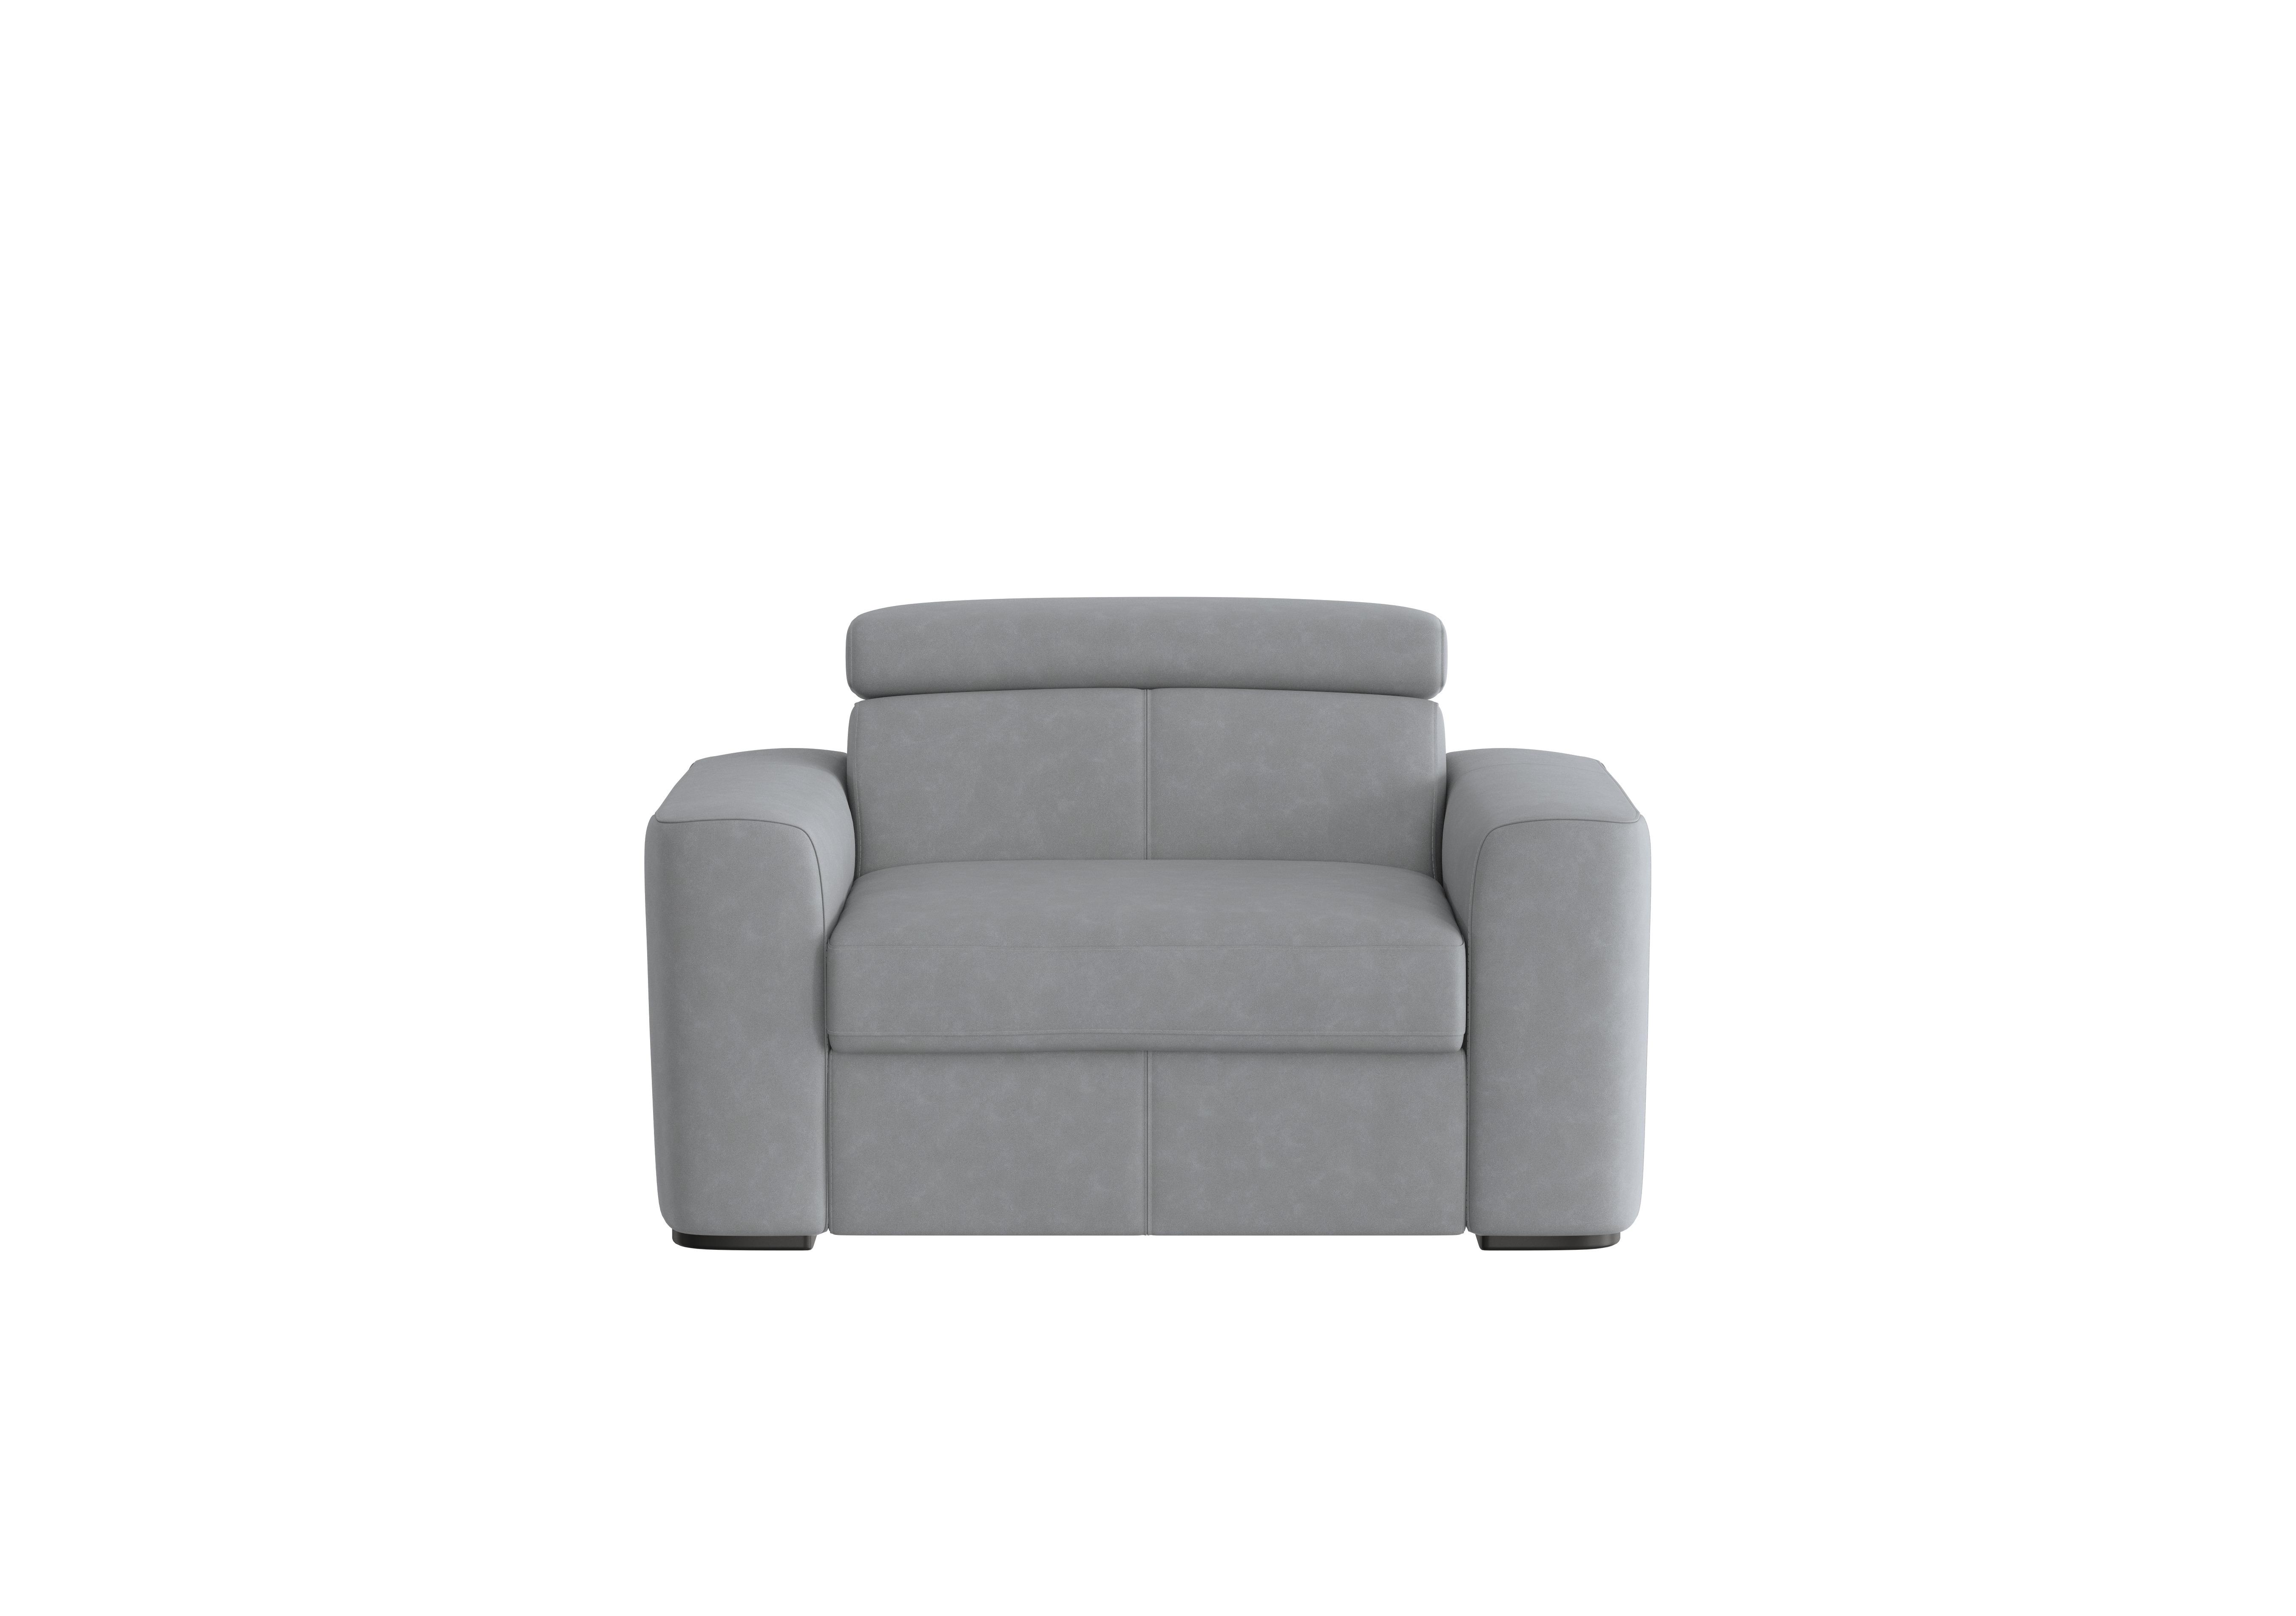 Infinity Fabric Chair Sofa Bed in Bfa-Ori-R07 Bluish Grey on Furniture Village